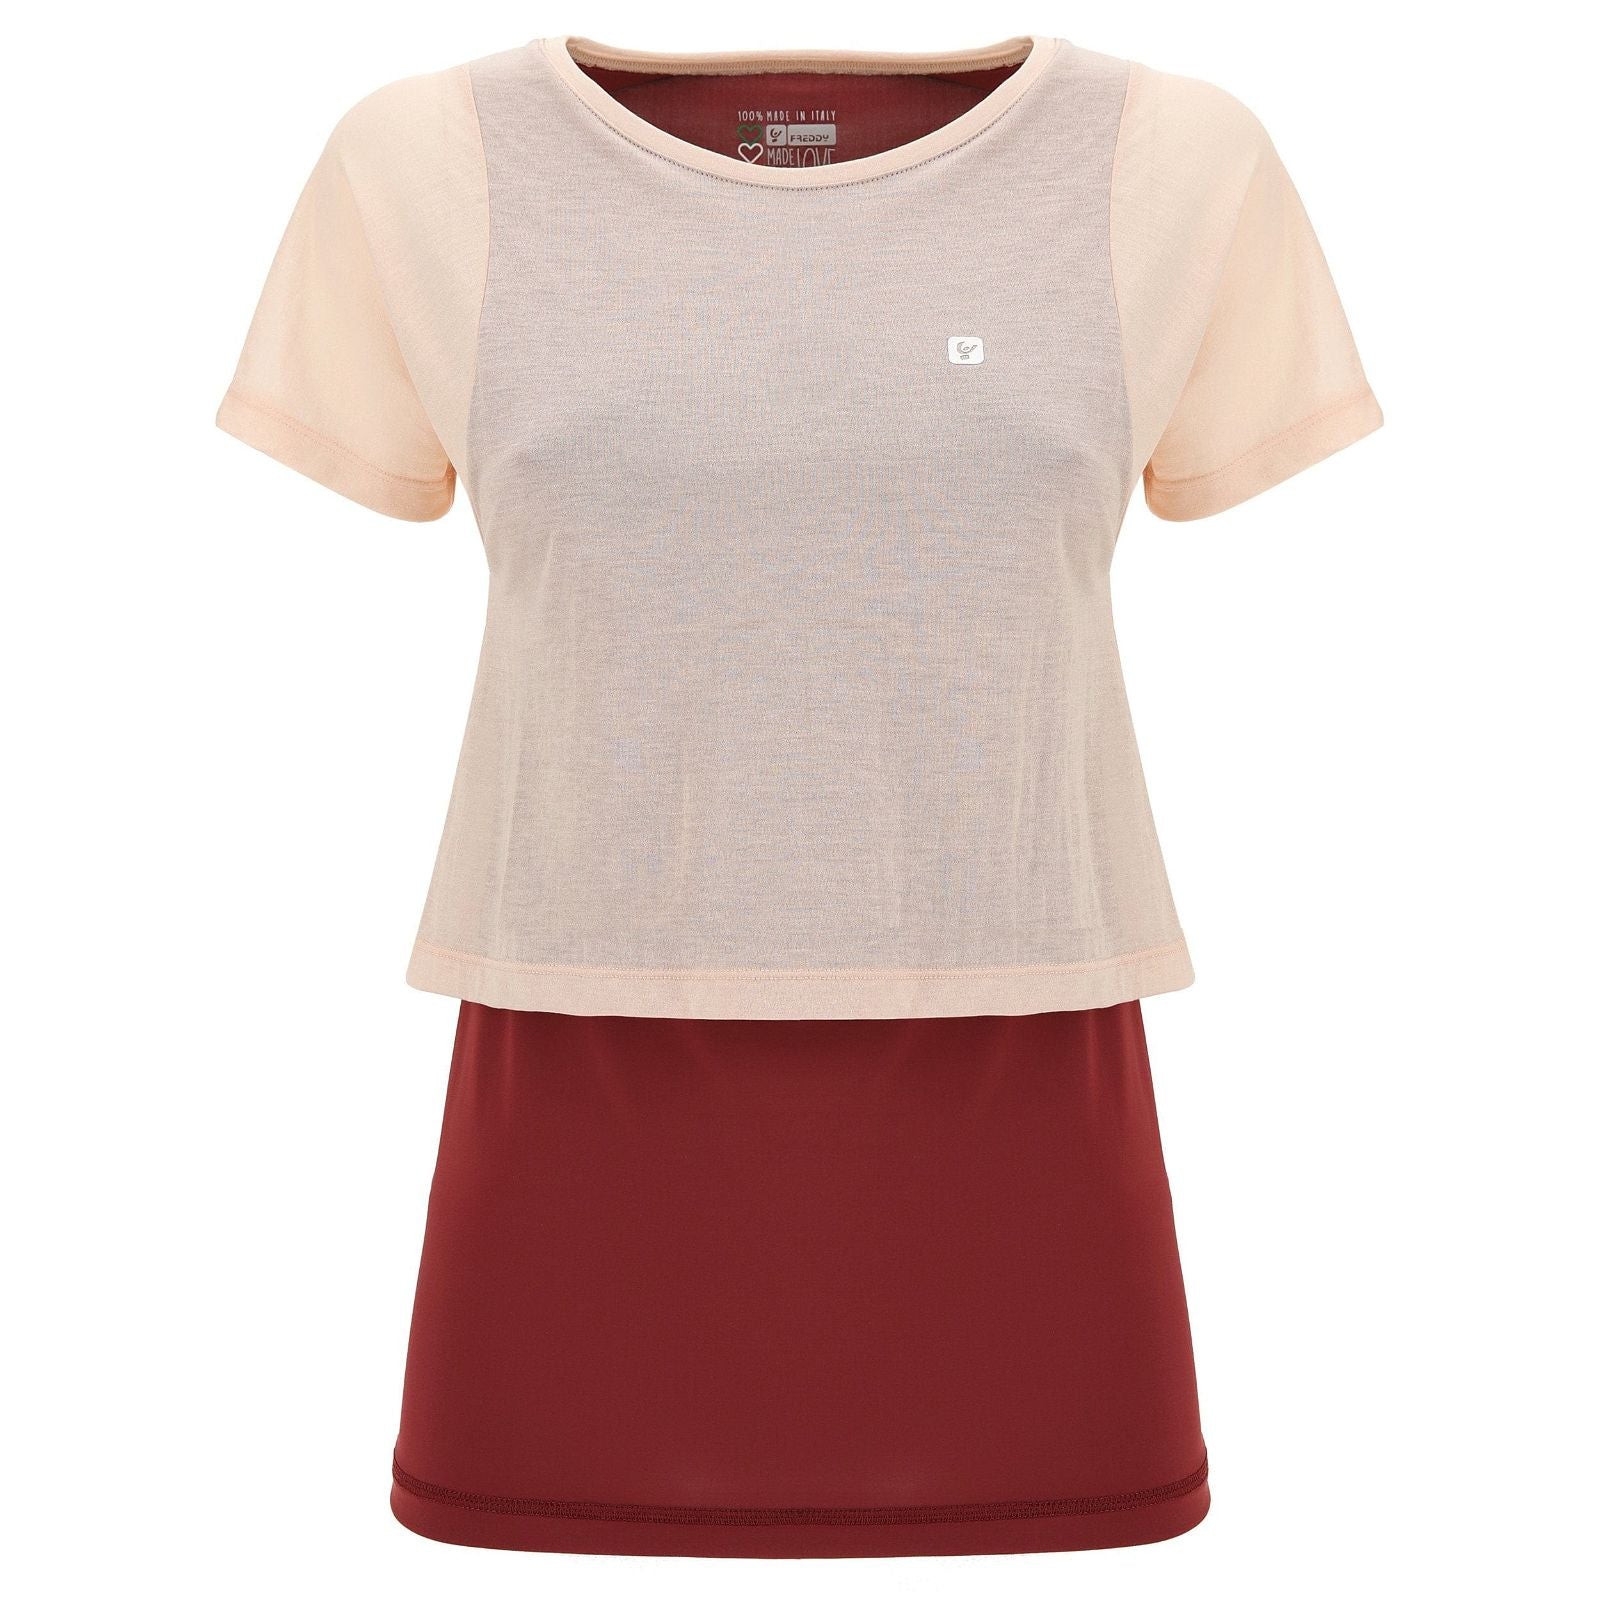 MII Yoga T-shirt - Burgundy + Pink 1